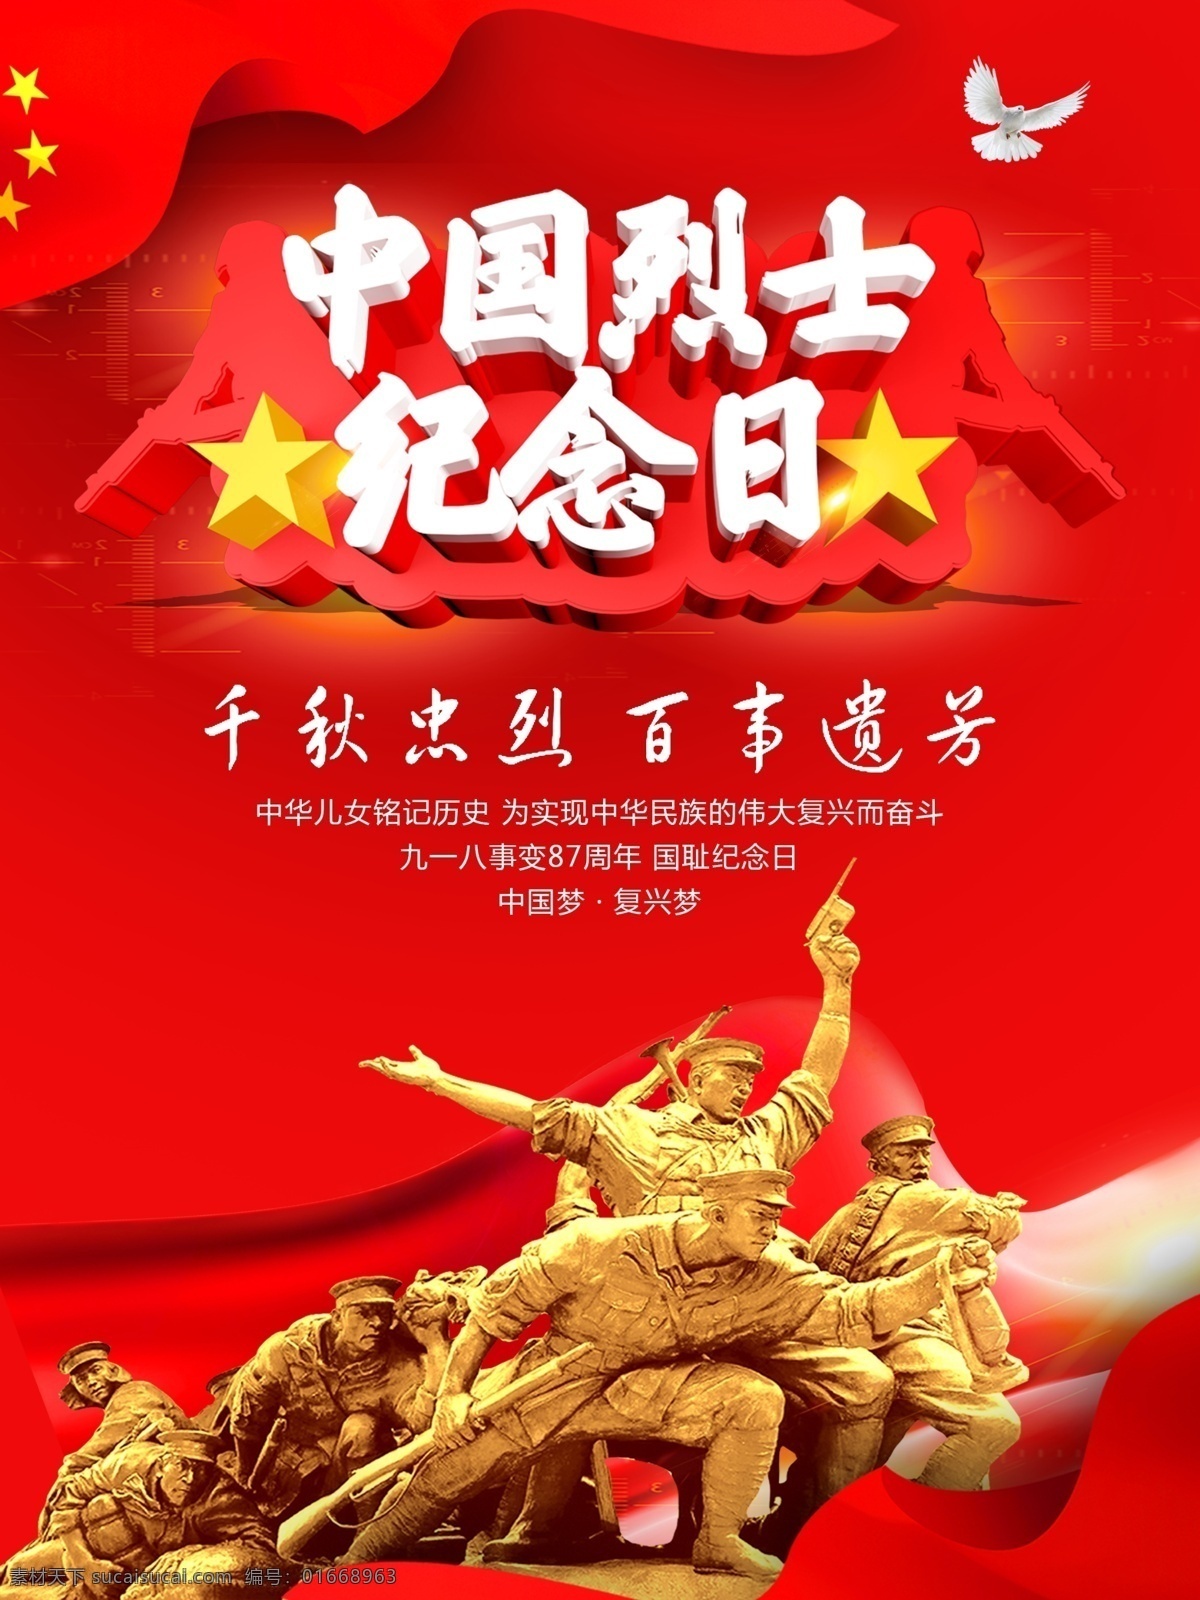 中国 烈士 纪念日 中国建党海报 纪念日海报 中国烈士 纪念 海报